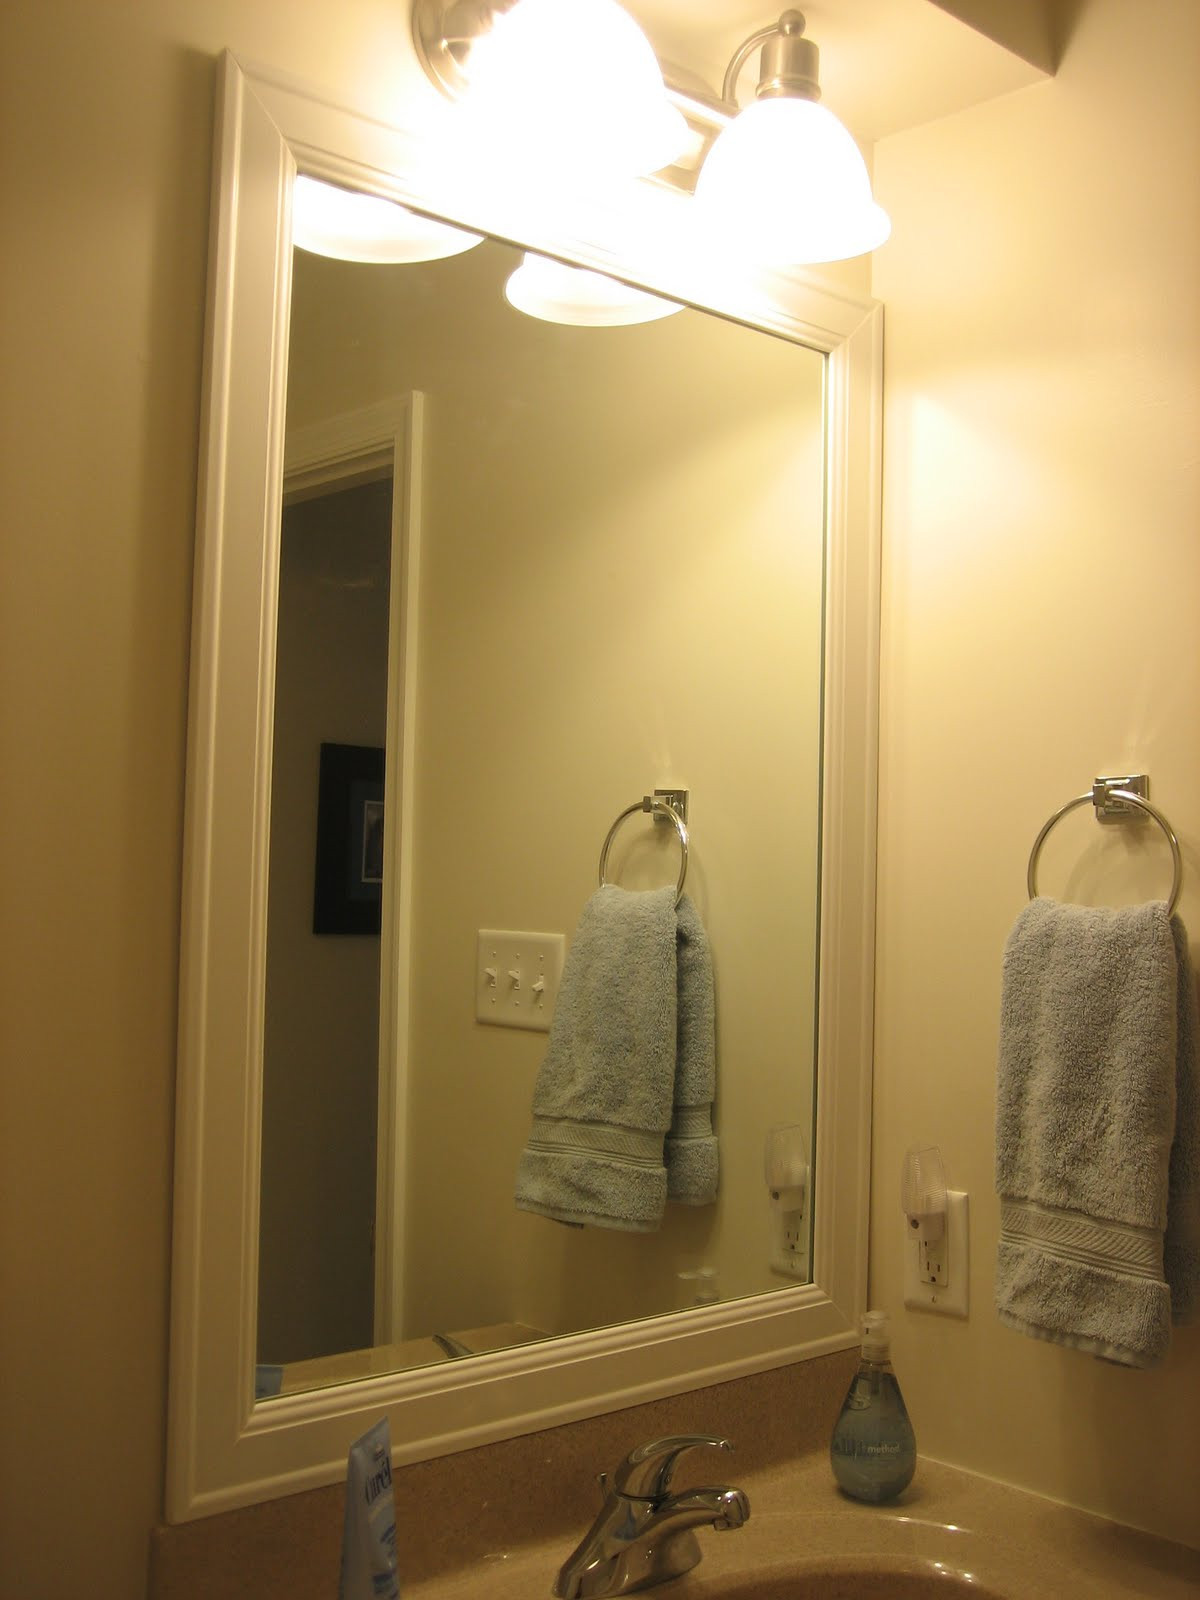 Framed Mirror In Bathroom
 Elizabeth & Co Framing Bathroom Mirrors